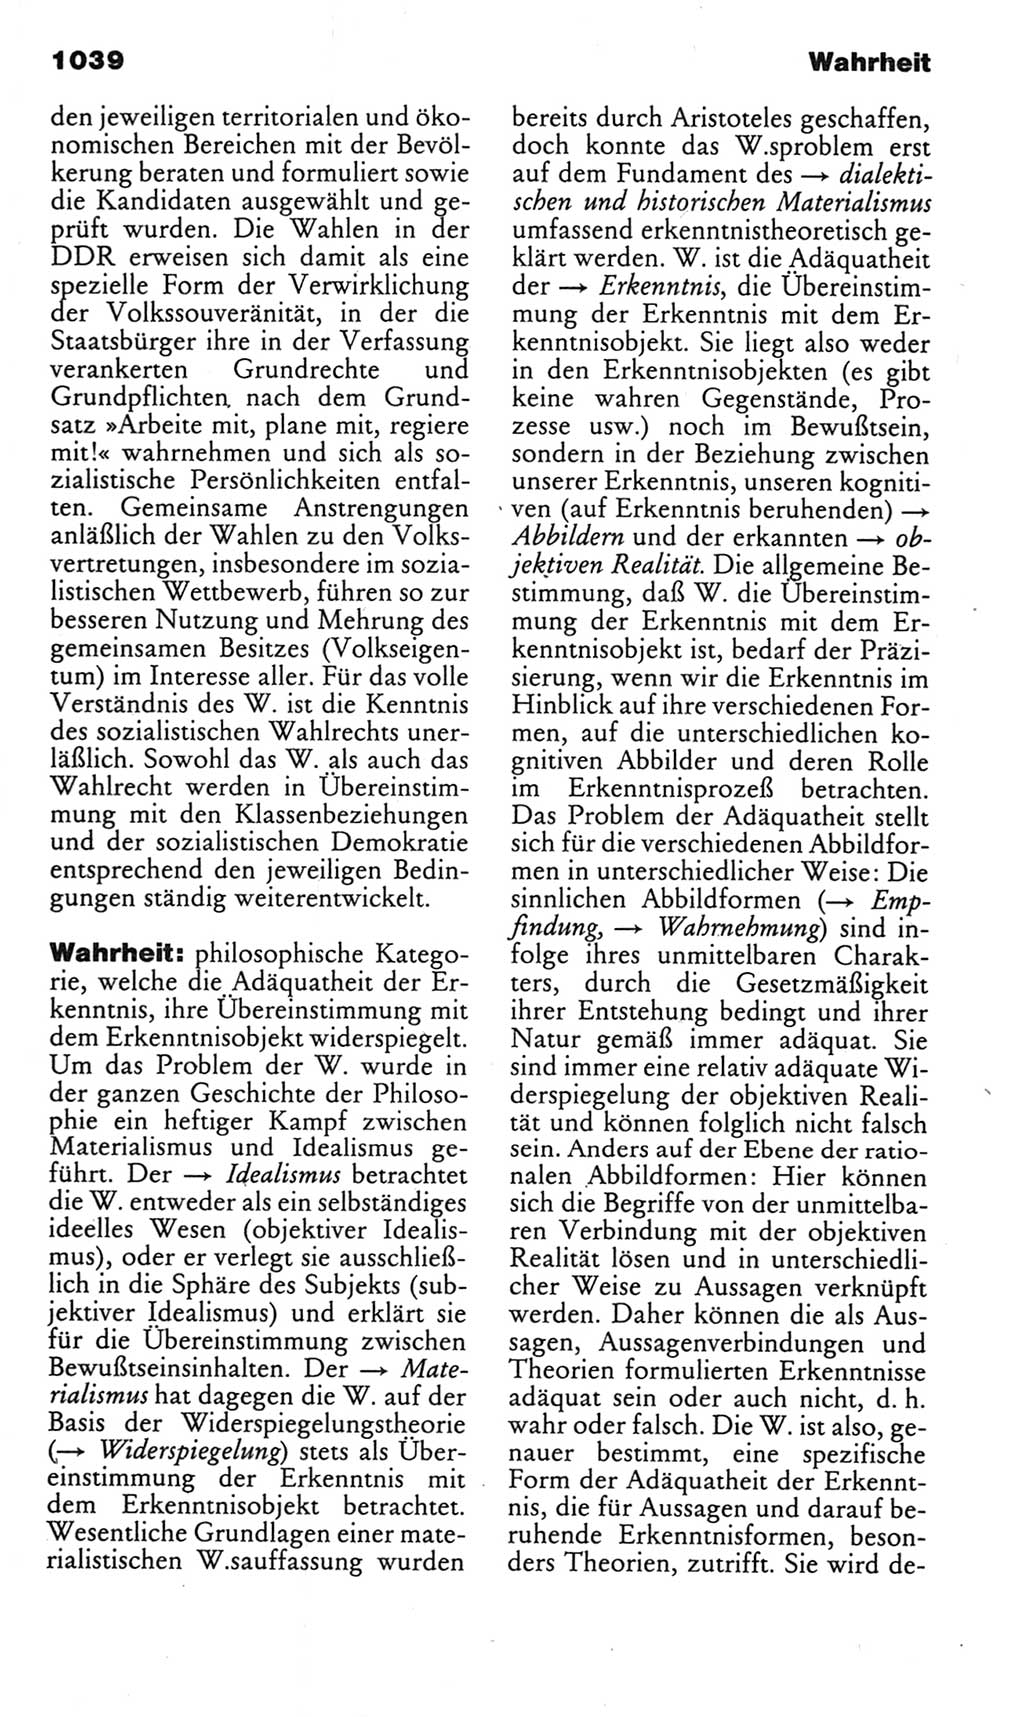 Kleines politisches Wörterbuch [Deutsche Demokratische Republik (DDR)] 1985, Seite 1039 (Kl. pol. Wb. DDR 1985, S. 1039)